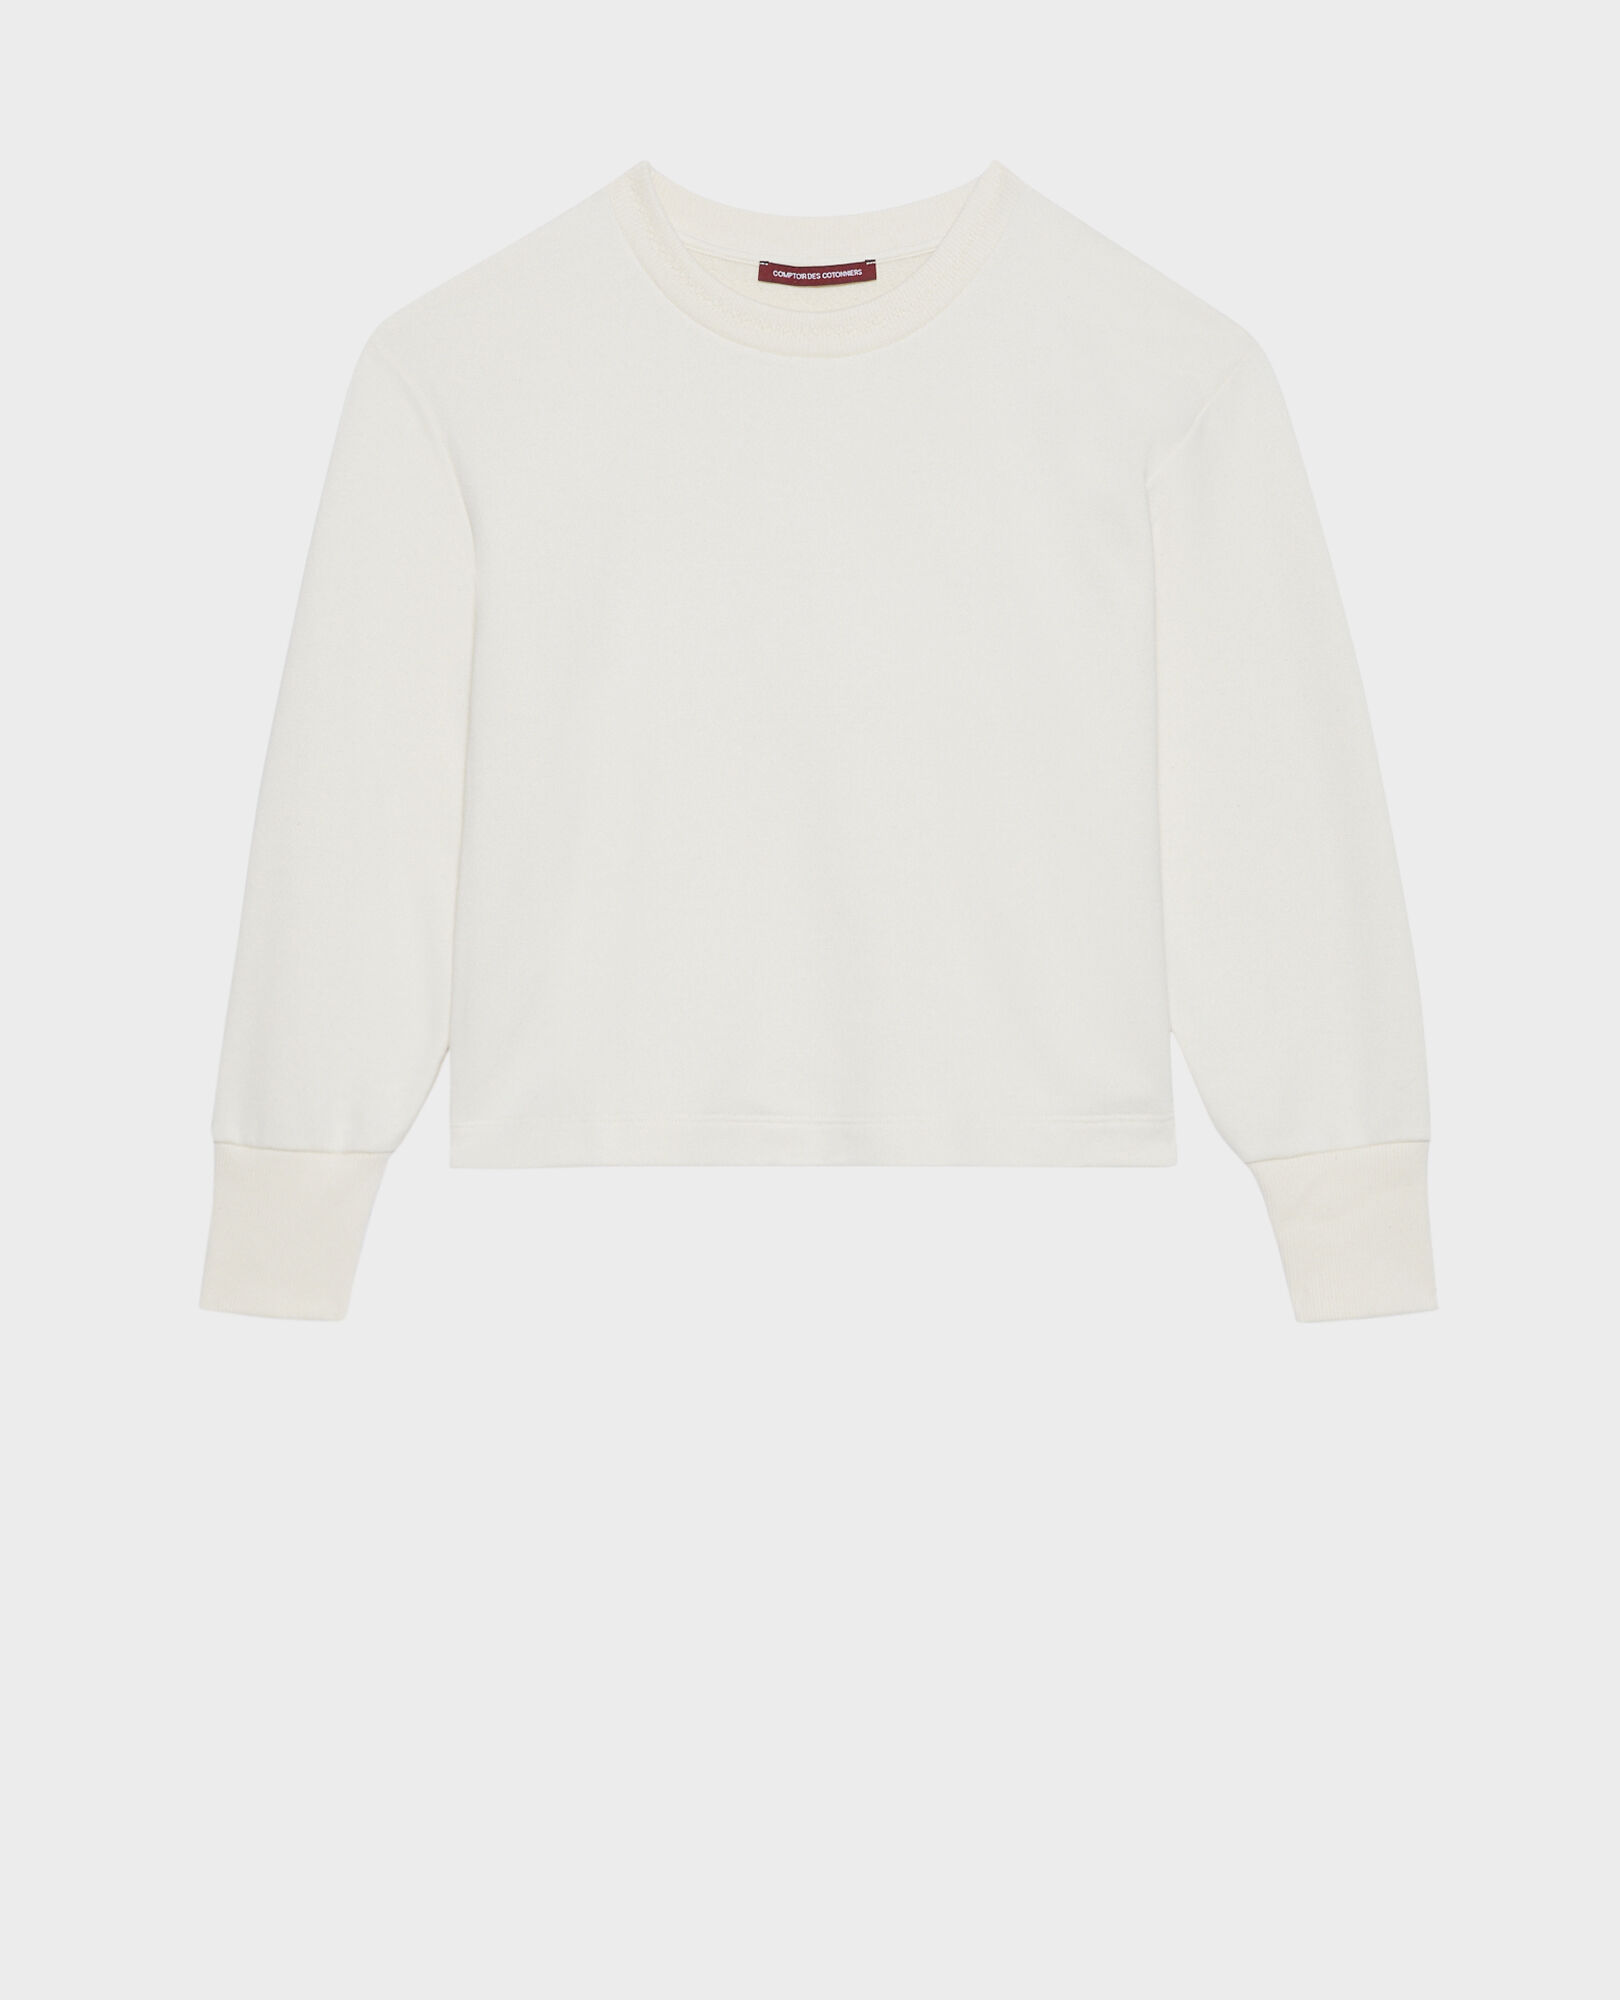 Cotton sweatshirt 11 off white 2sho840c30